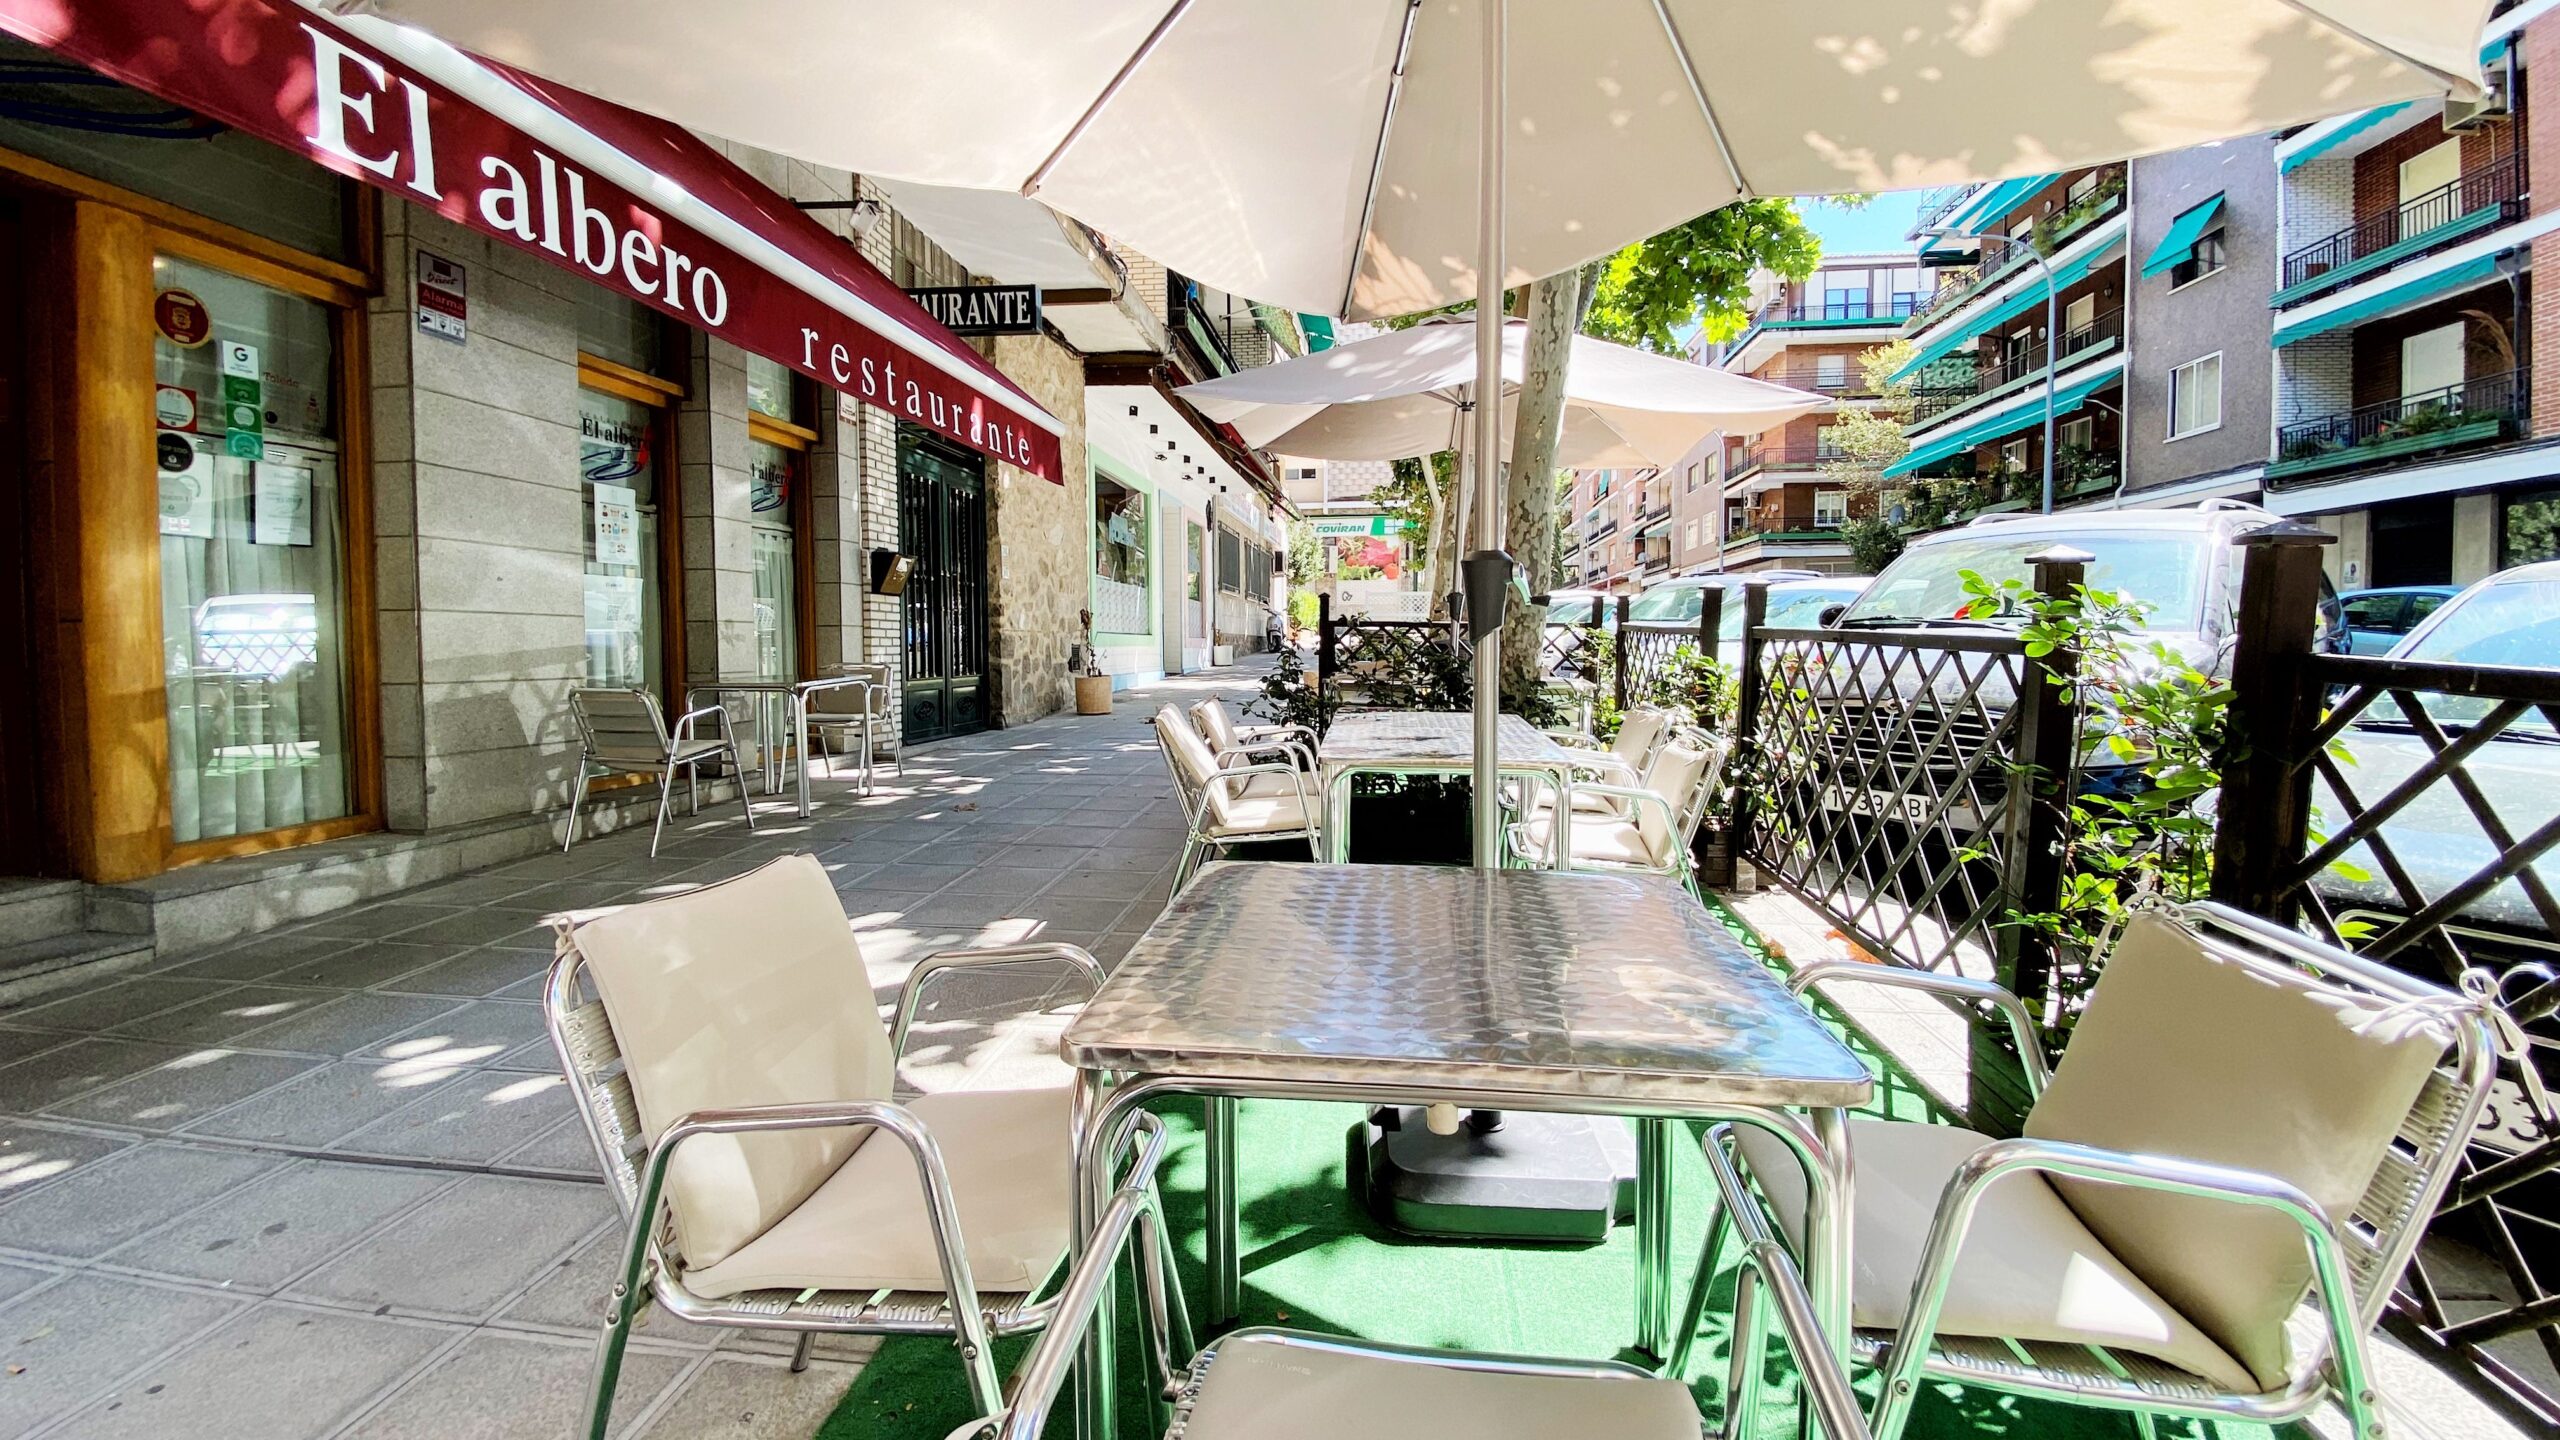 El Albero - mejores restaurantes en toledo